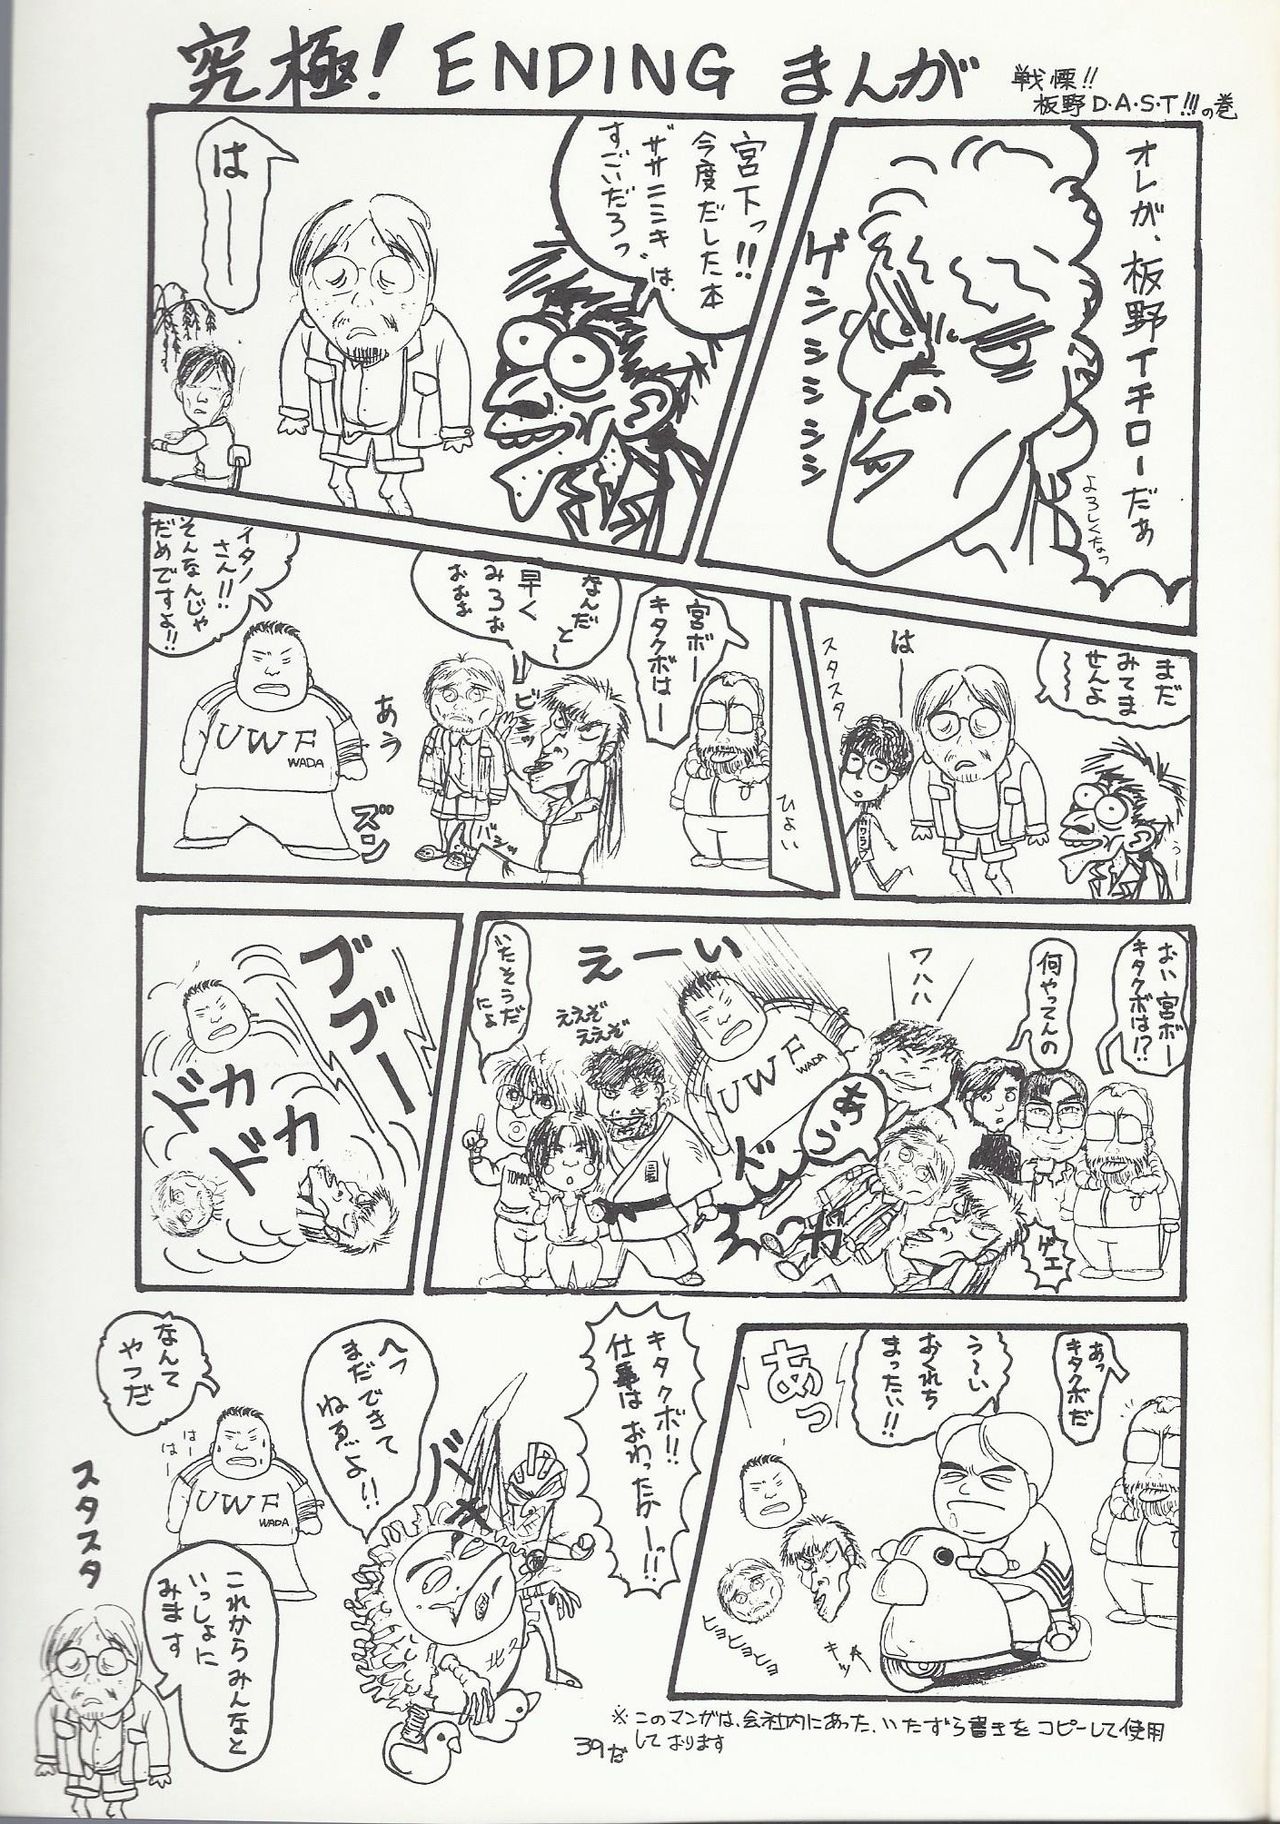 [HYPER企画 (よろず)] SASA-NISHIKI SUPER-BLEND. Vol. 001